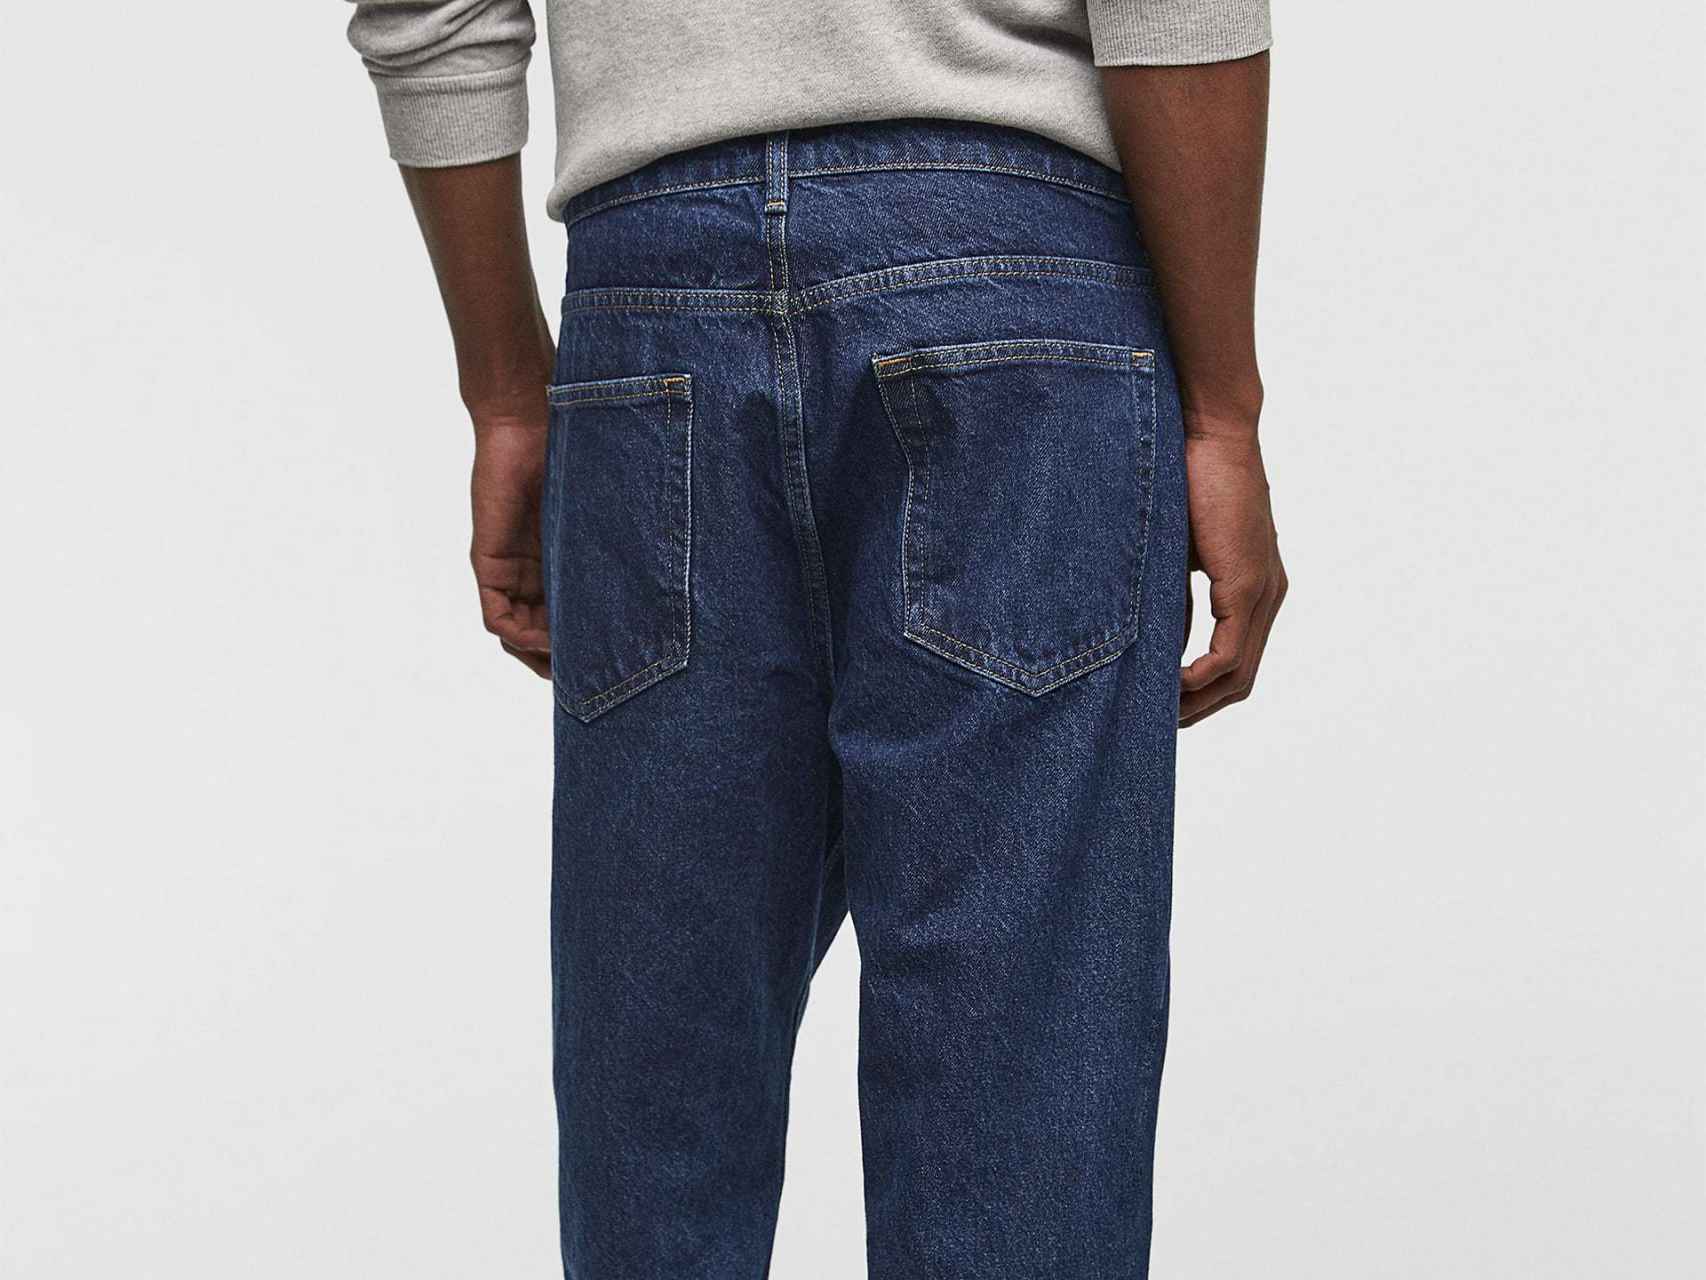 Pantalón de tiro bajo de Zara, 25,99 euros.